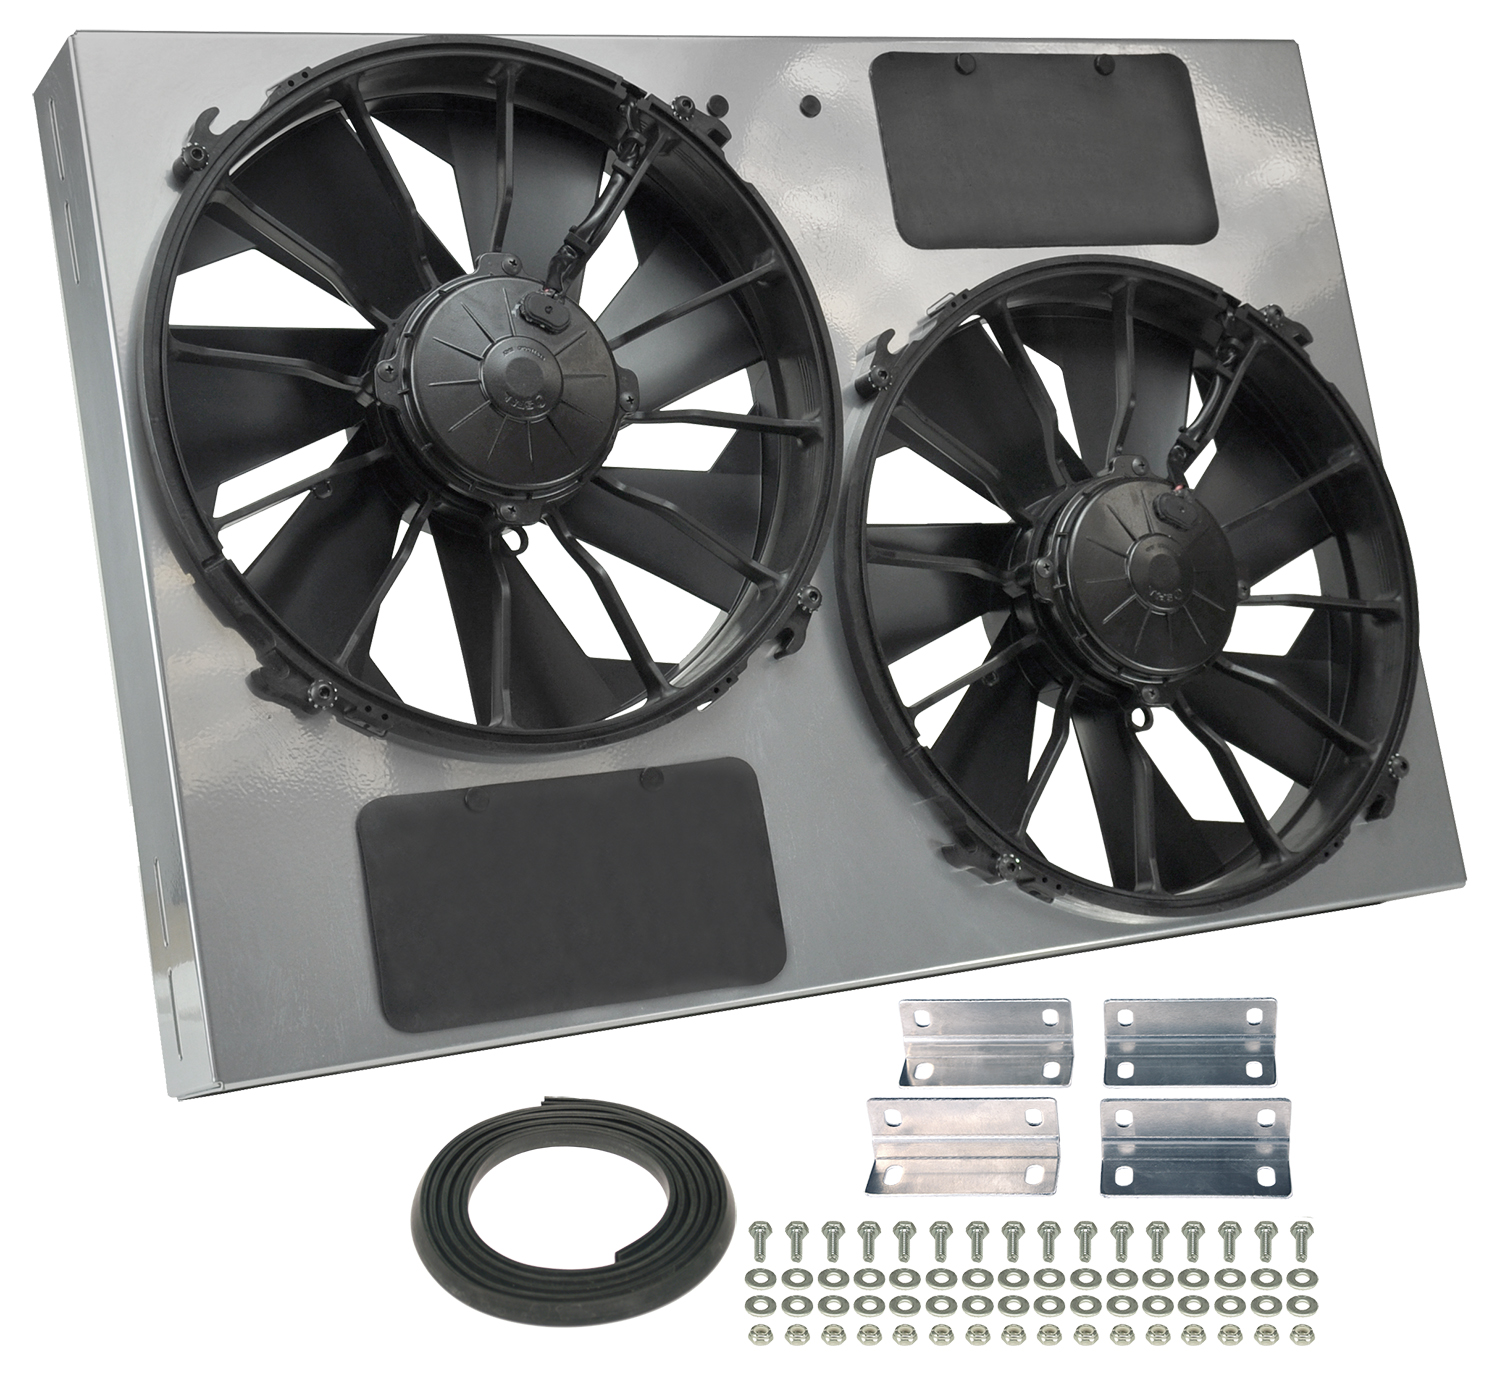 Trailblazer SS Dual Electric Fan Kit – Derale HD Fans